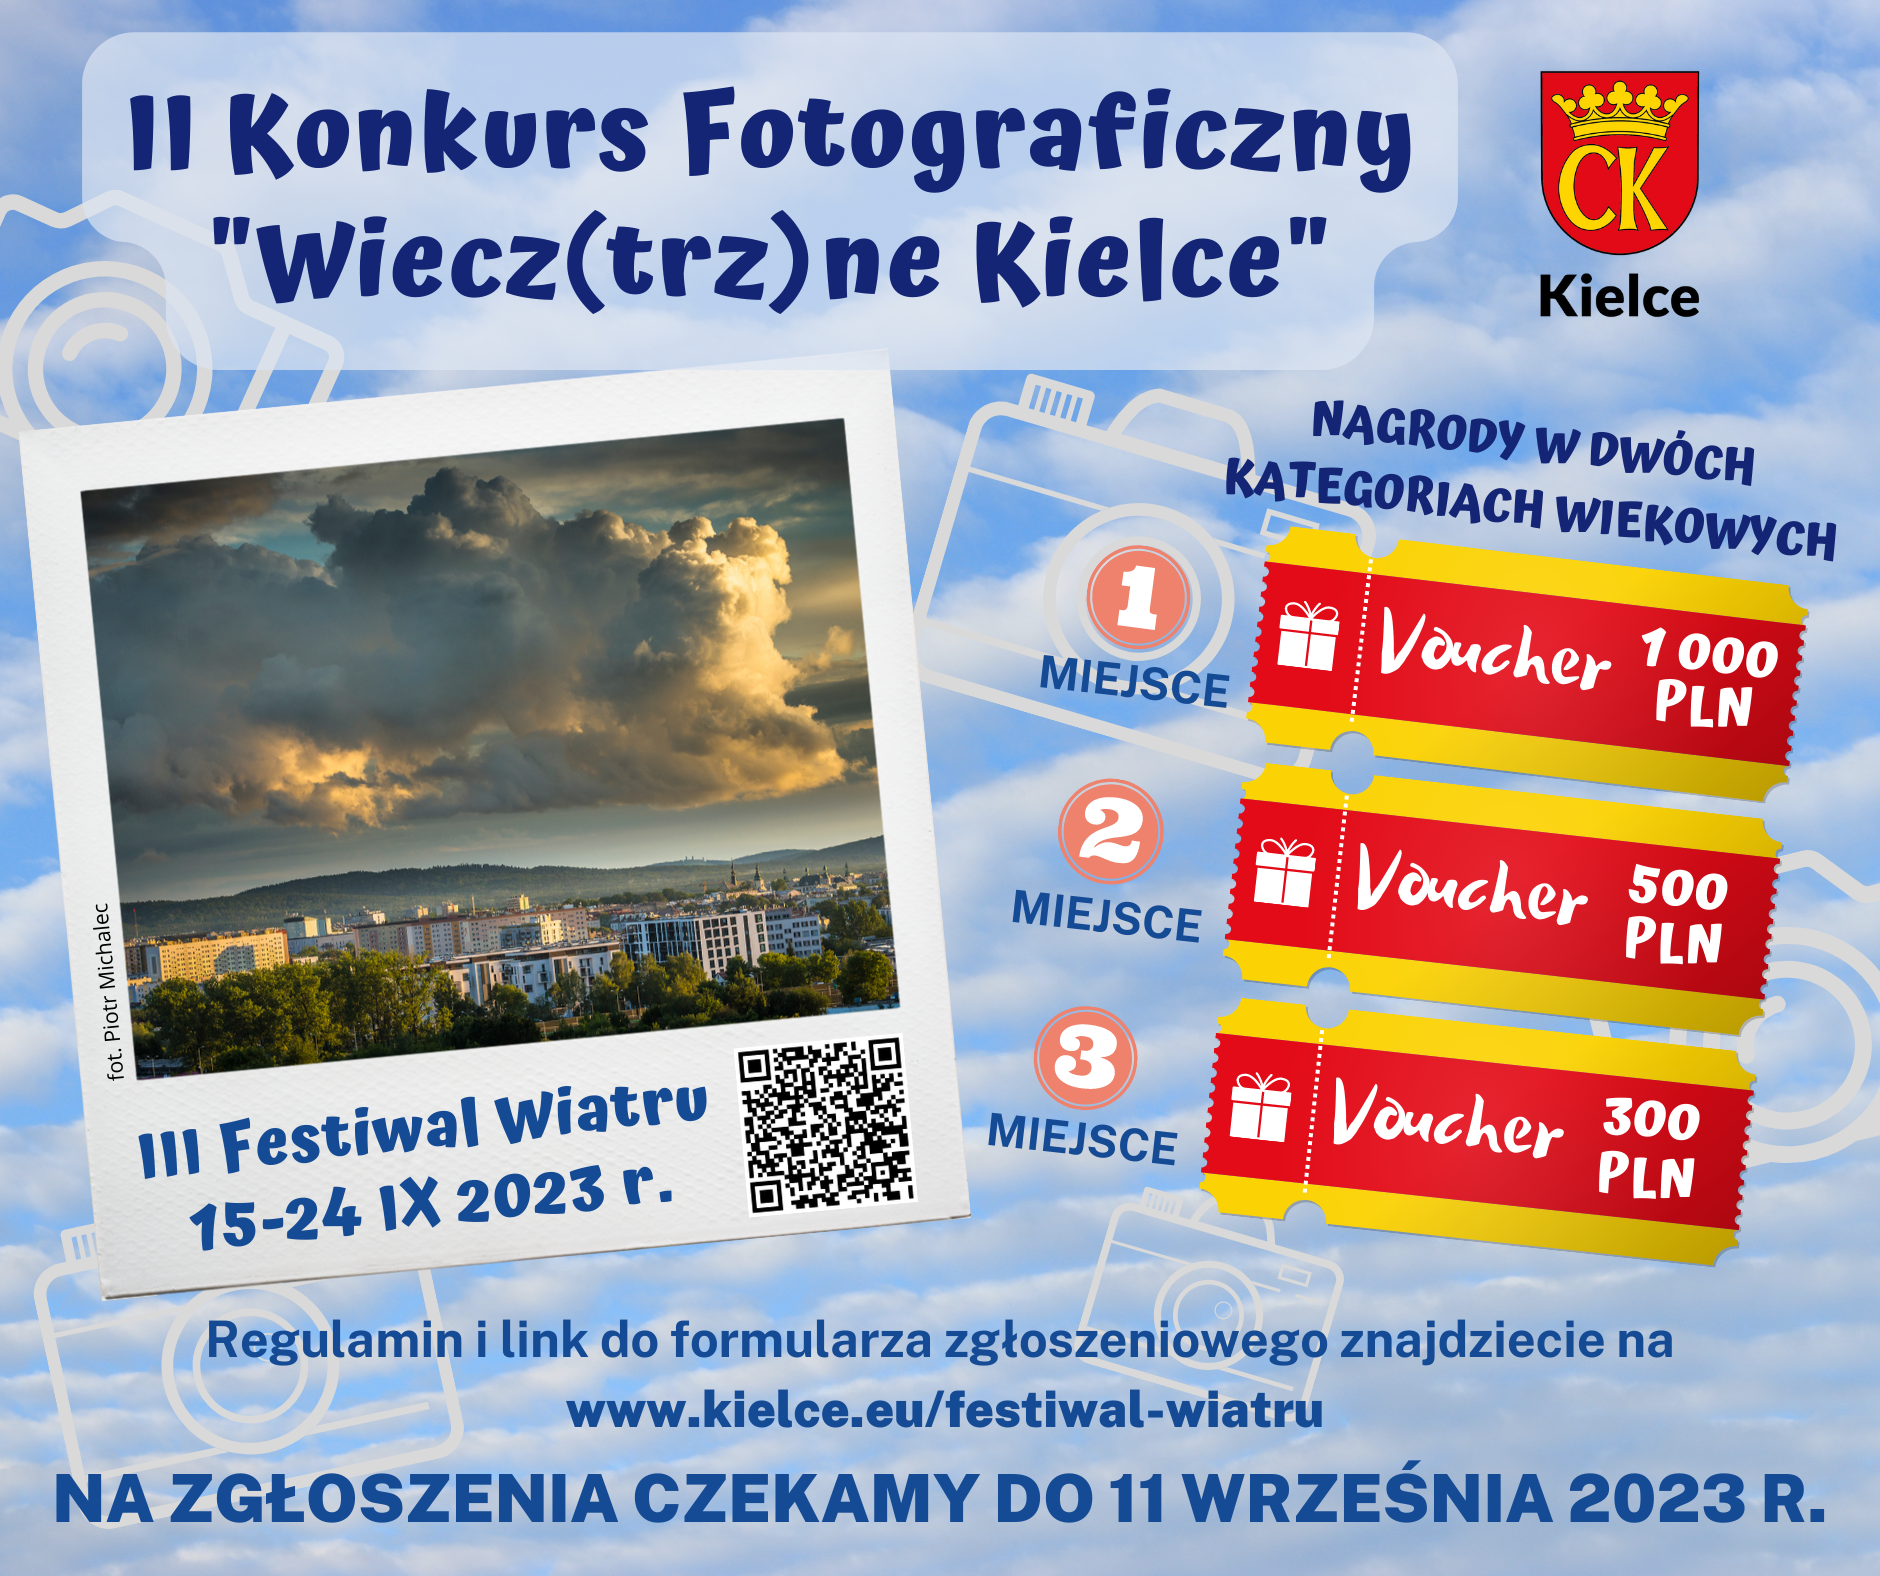 II Konkurs Fotograficzny „Wiecz(trz)ne Kielce” organizowany w ramach III Festiwalu Wiatru - Kielce 2023